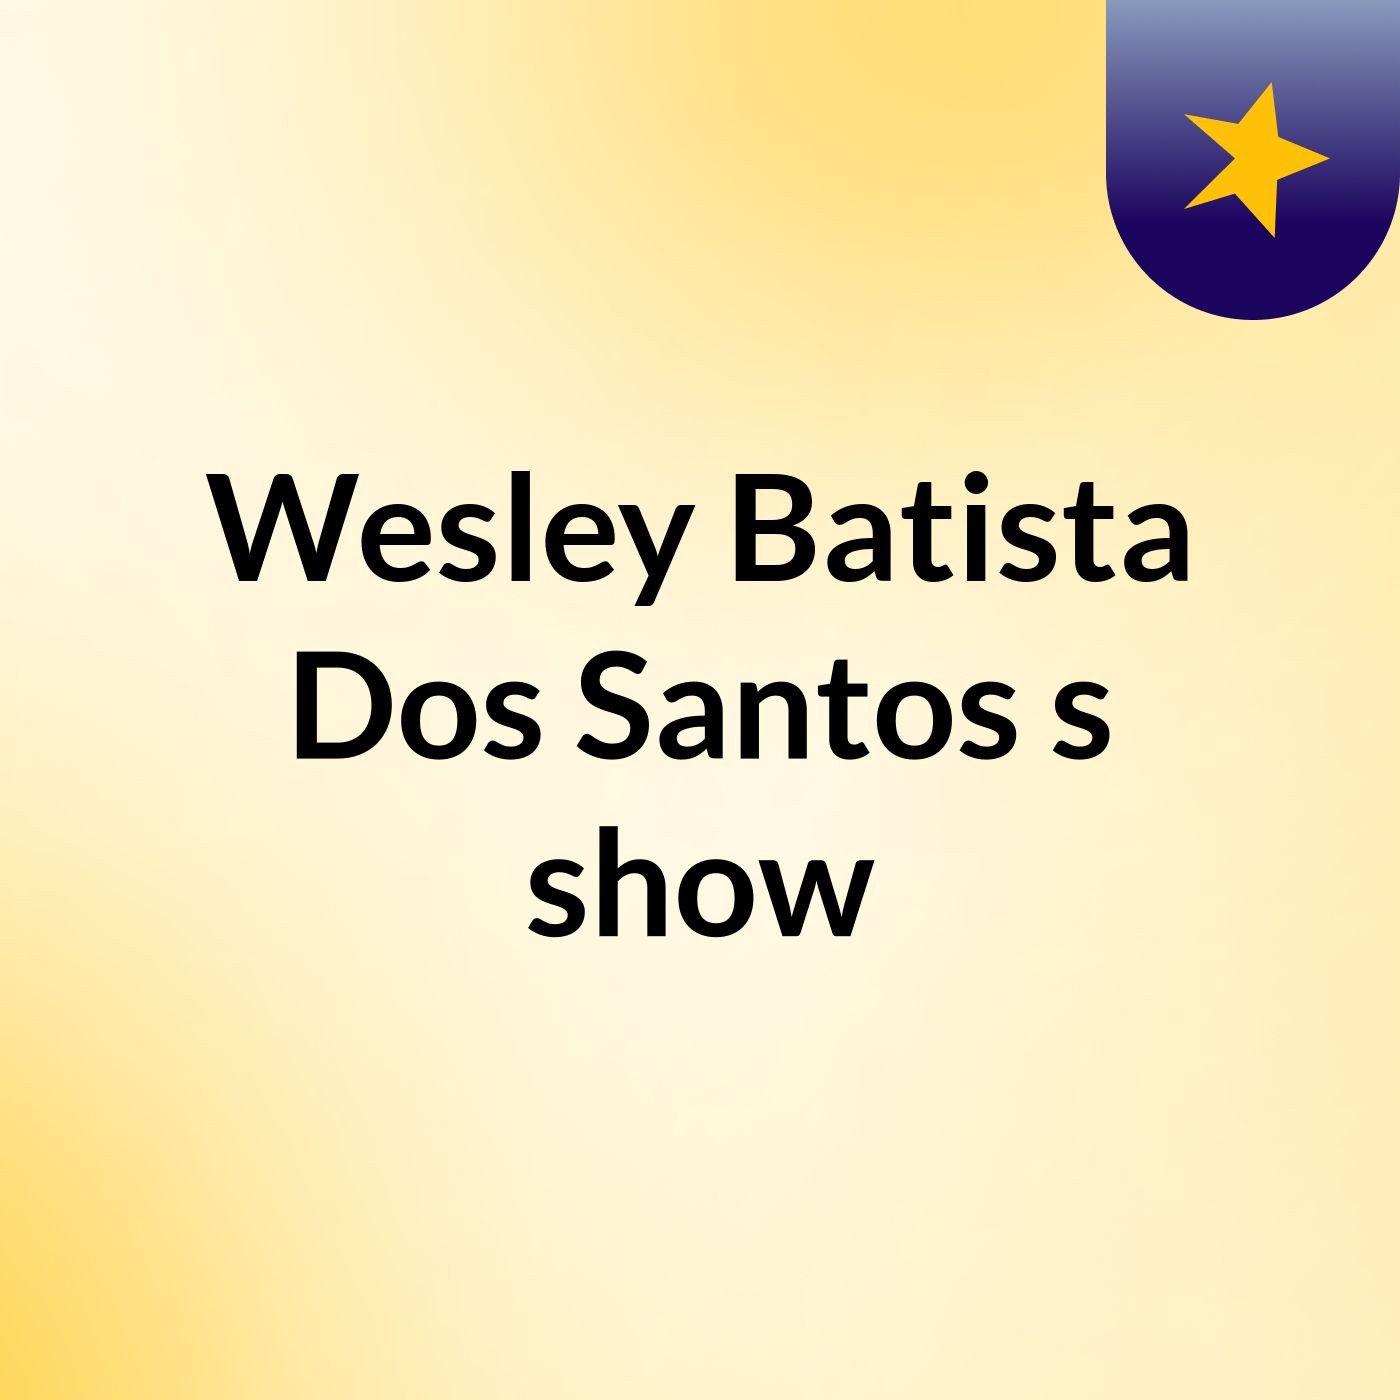 Episódio 8 - Wesley Batista Dos Santos's show